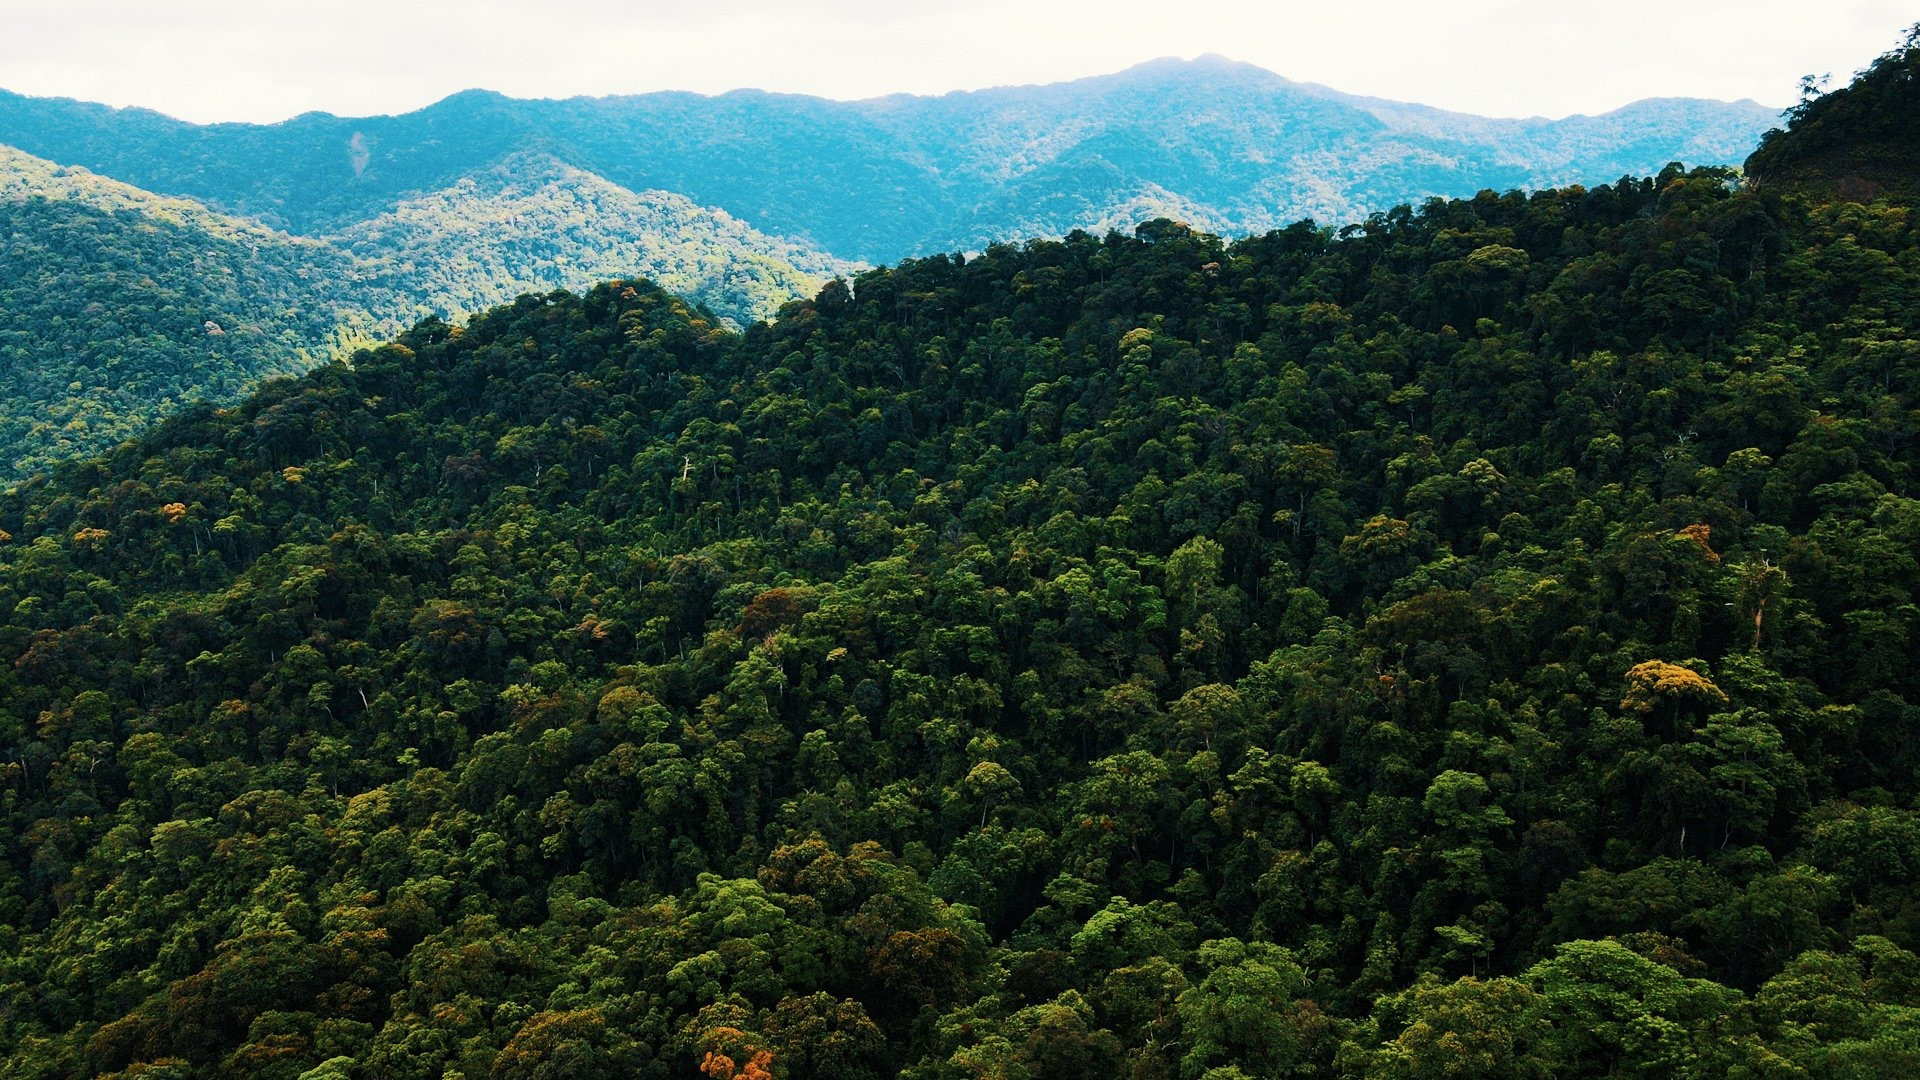 Từ nguồn tài chính chính sách chi trả dịch vụ môi trường rừng dồi dào, Quảng Nam đã  quản lý chặt chẽ các khu rừng đặc dụng trong những năm gần đây.